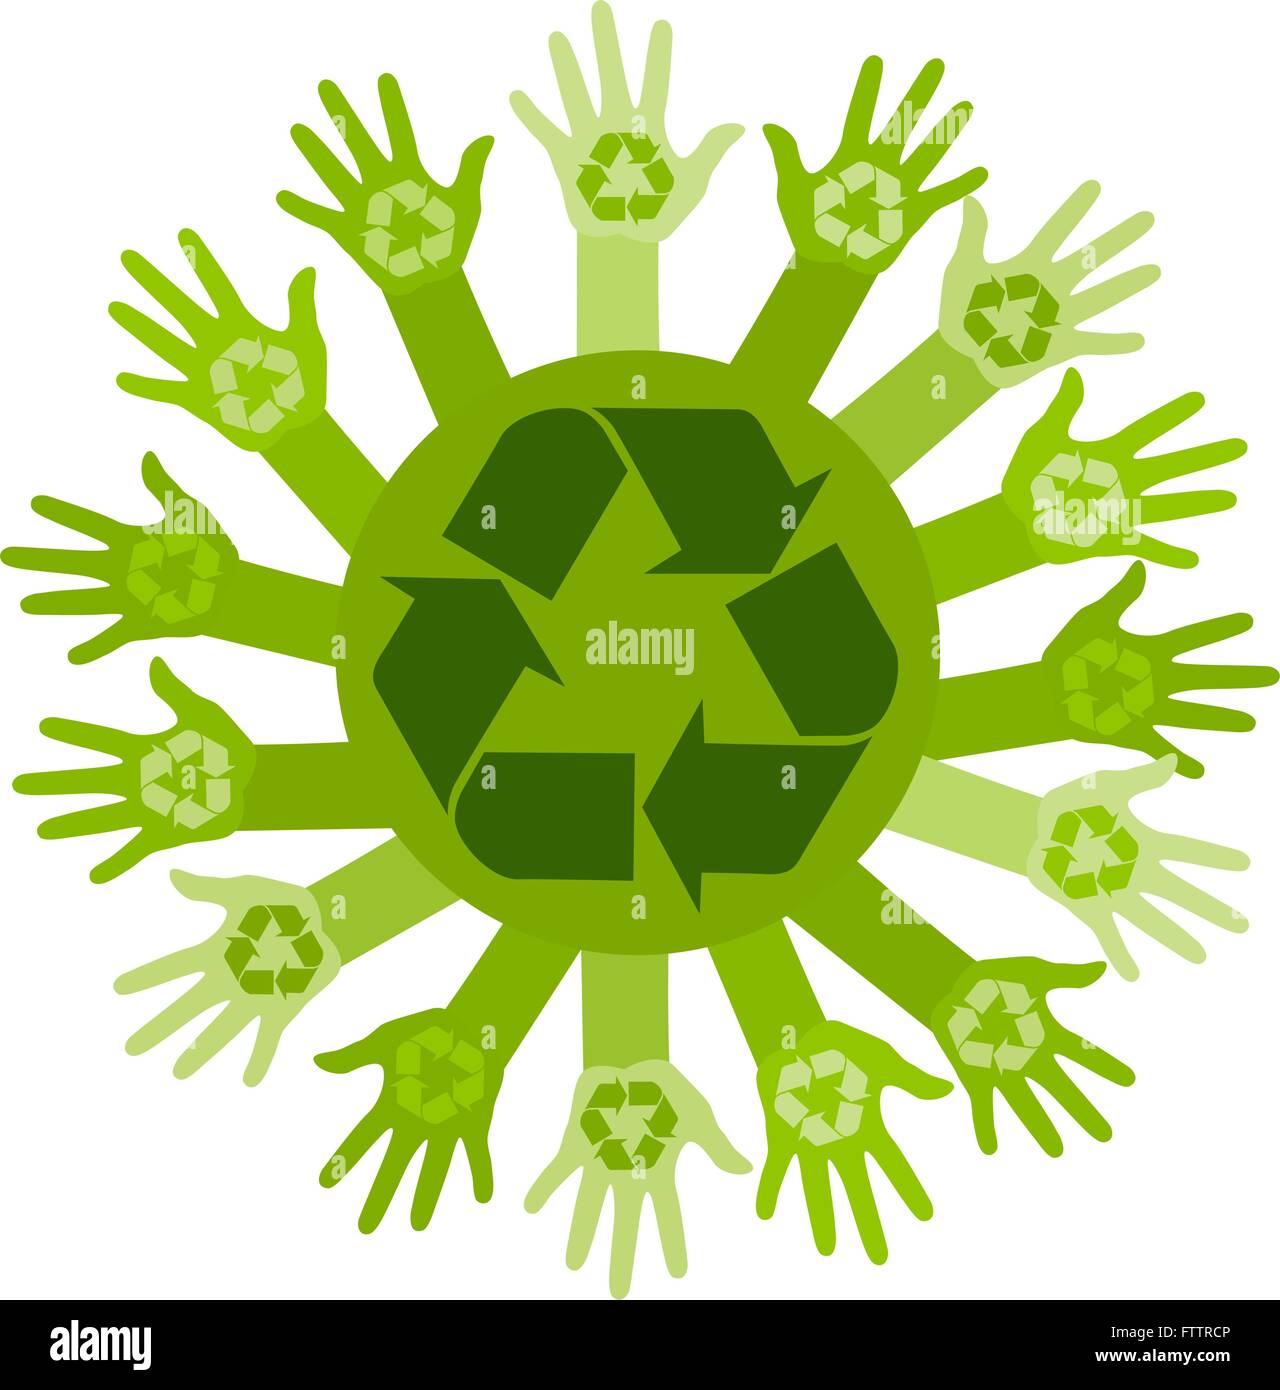 Konzeptionelle Ökologie Abbildung mit Händen und recycling-Zeichen. Vektor Stock Vektor